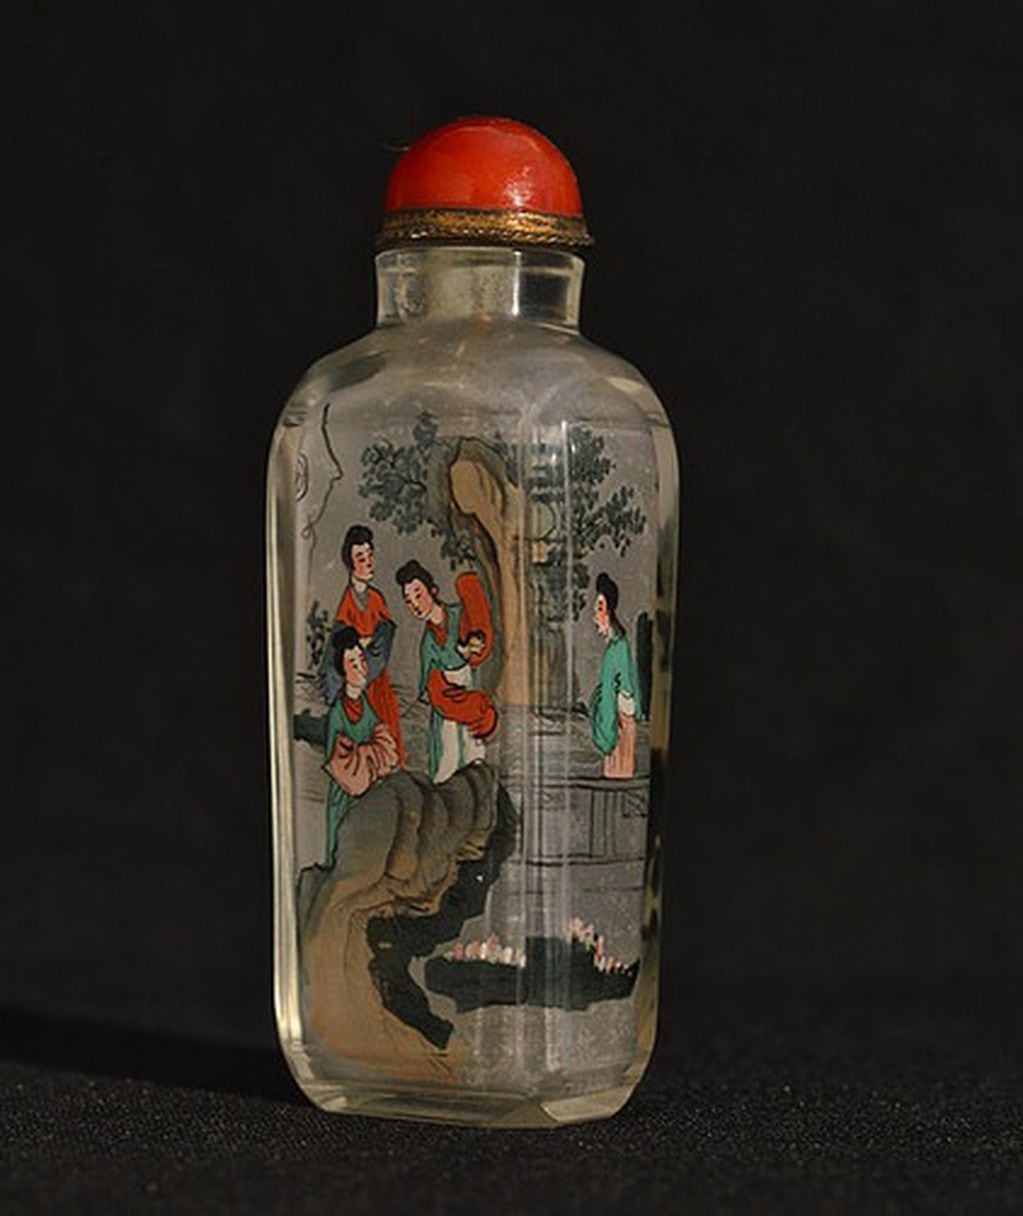 Botella para rapé proveniente de China con cuerpo de vidrio pintado desde el interior, siglo XIX.